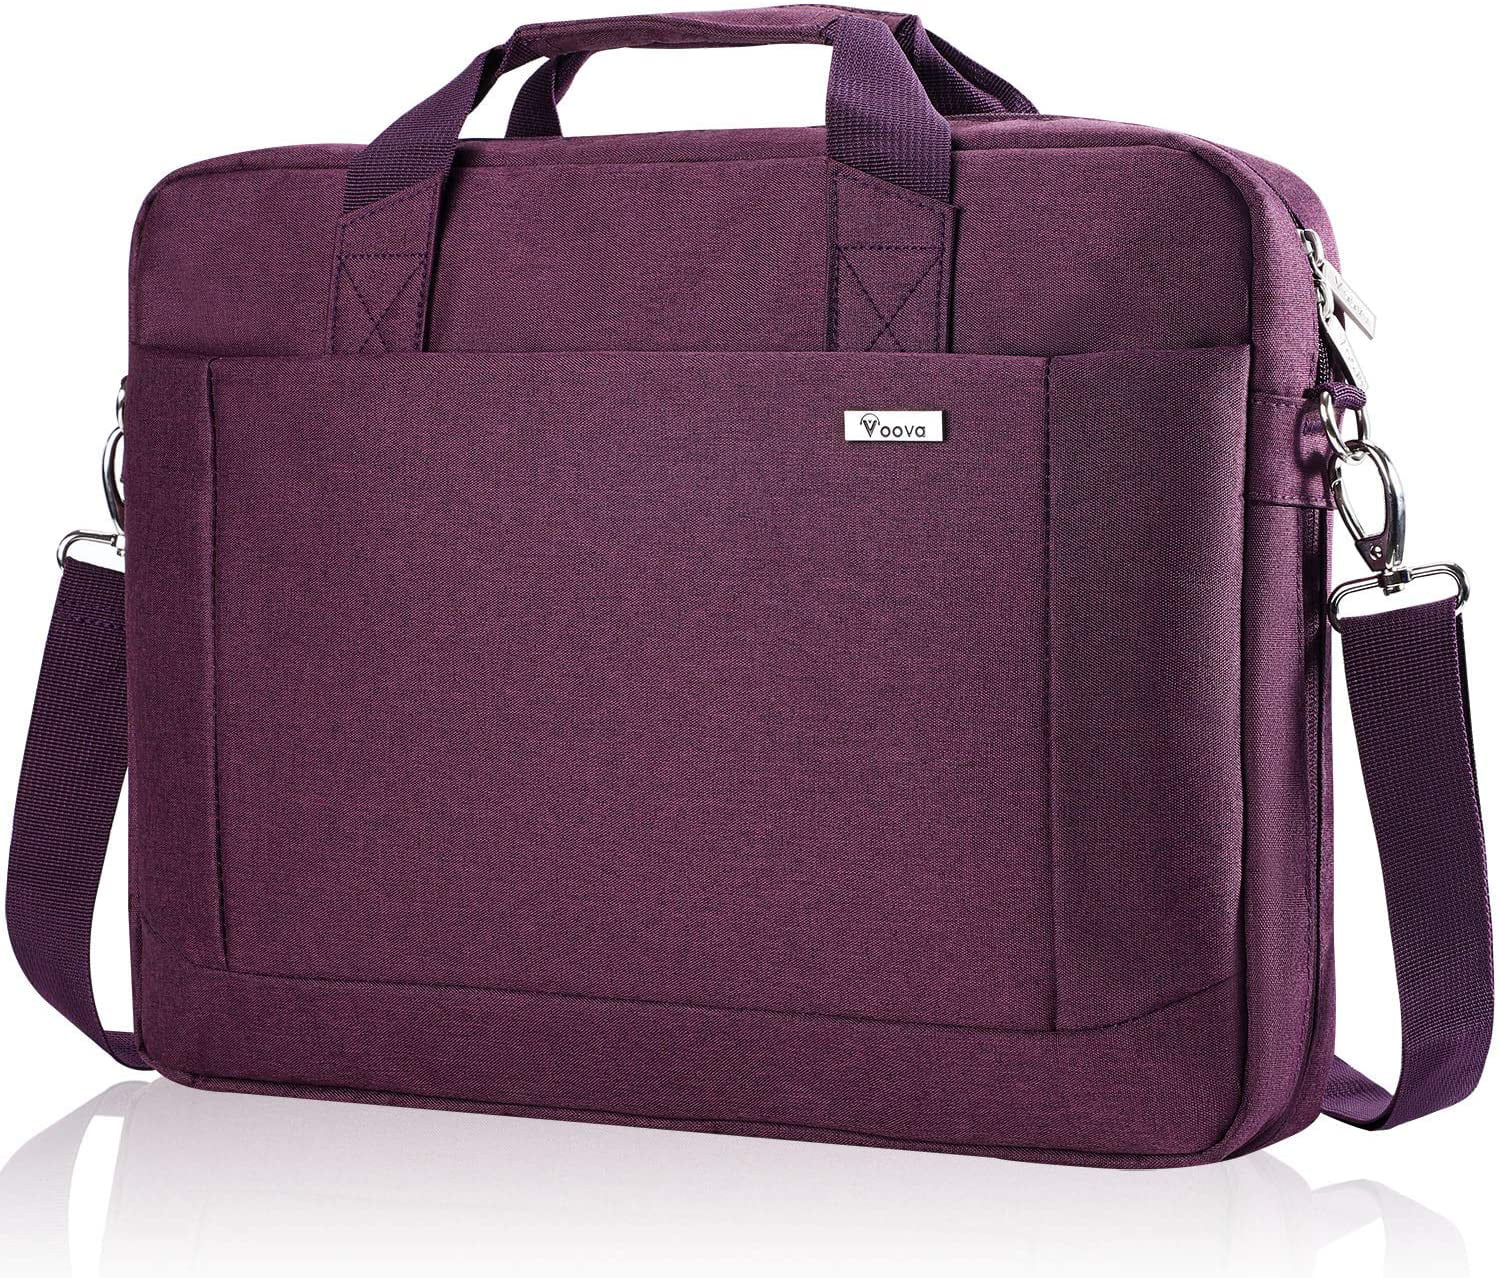 Lightweight 15 inch Laptop Bag Business Messenger Briefcases Pink Rose Waterproof Computer Tablet Shoulder Bag Carrying Case Handbag for Men and Women